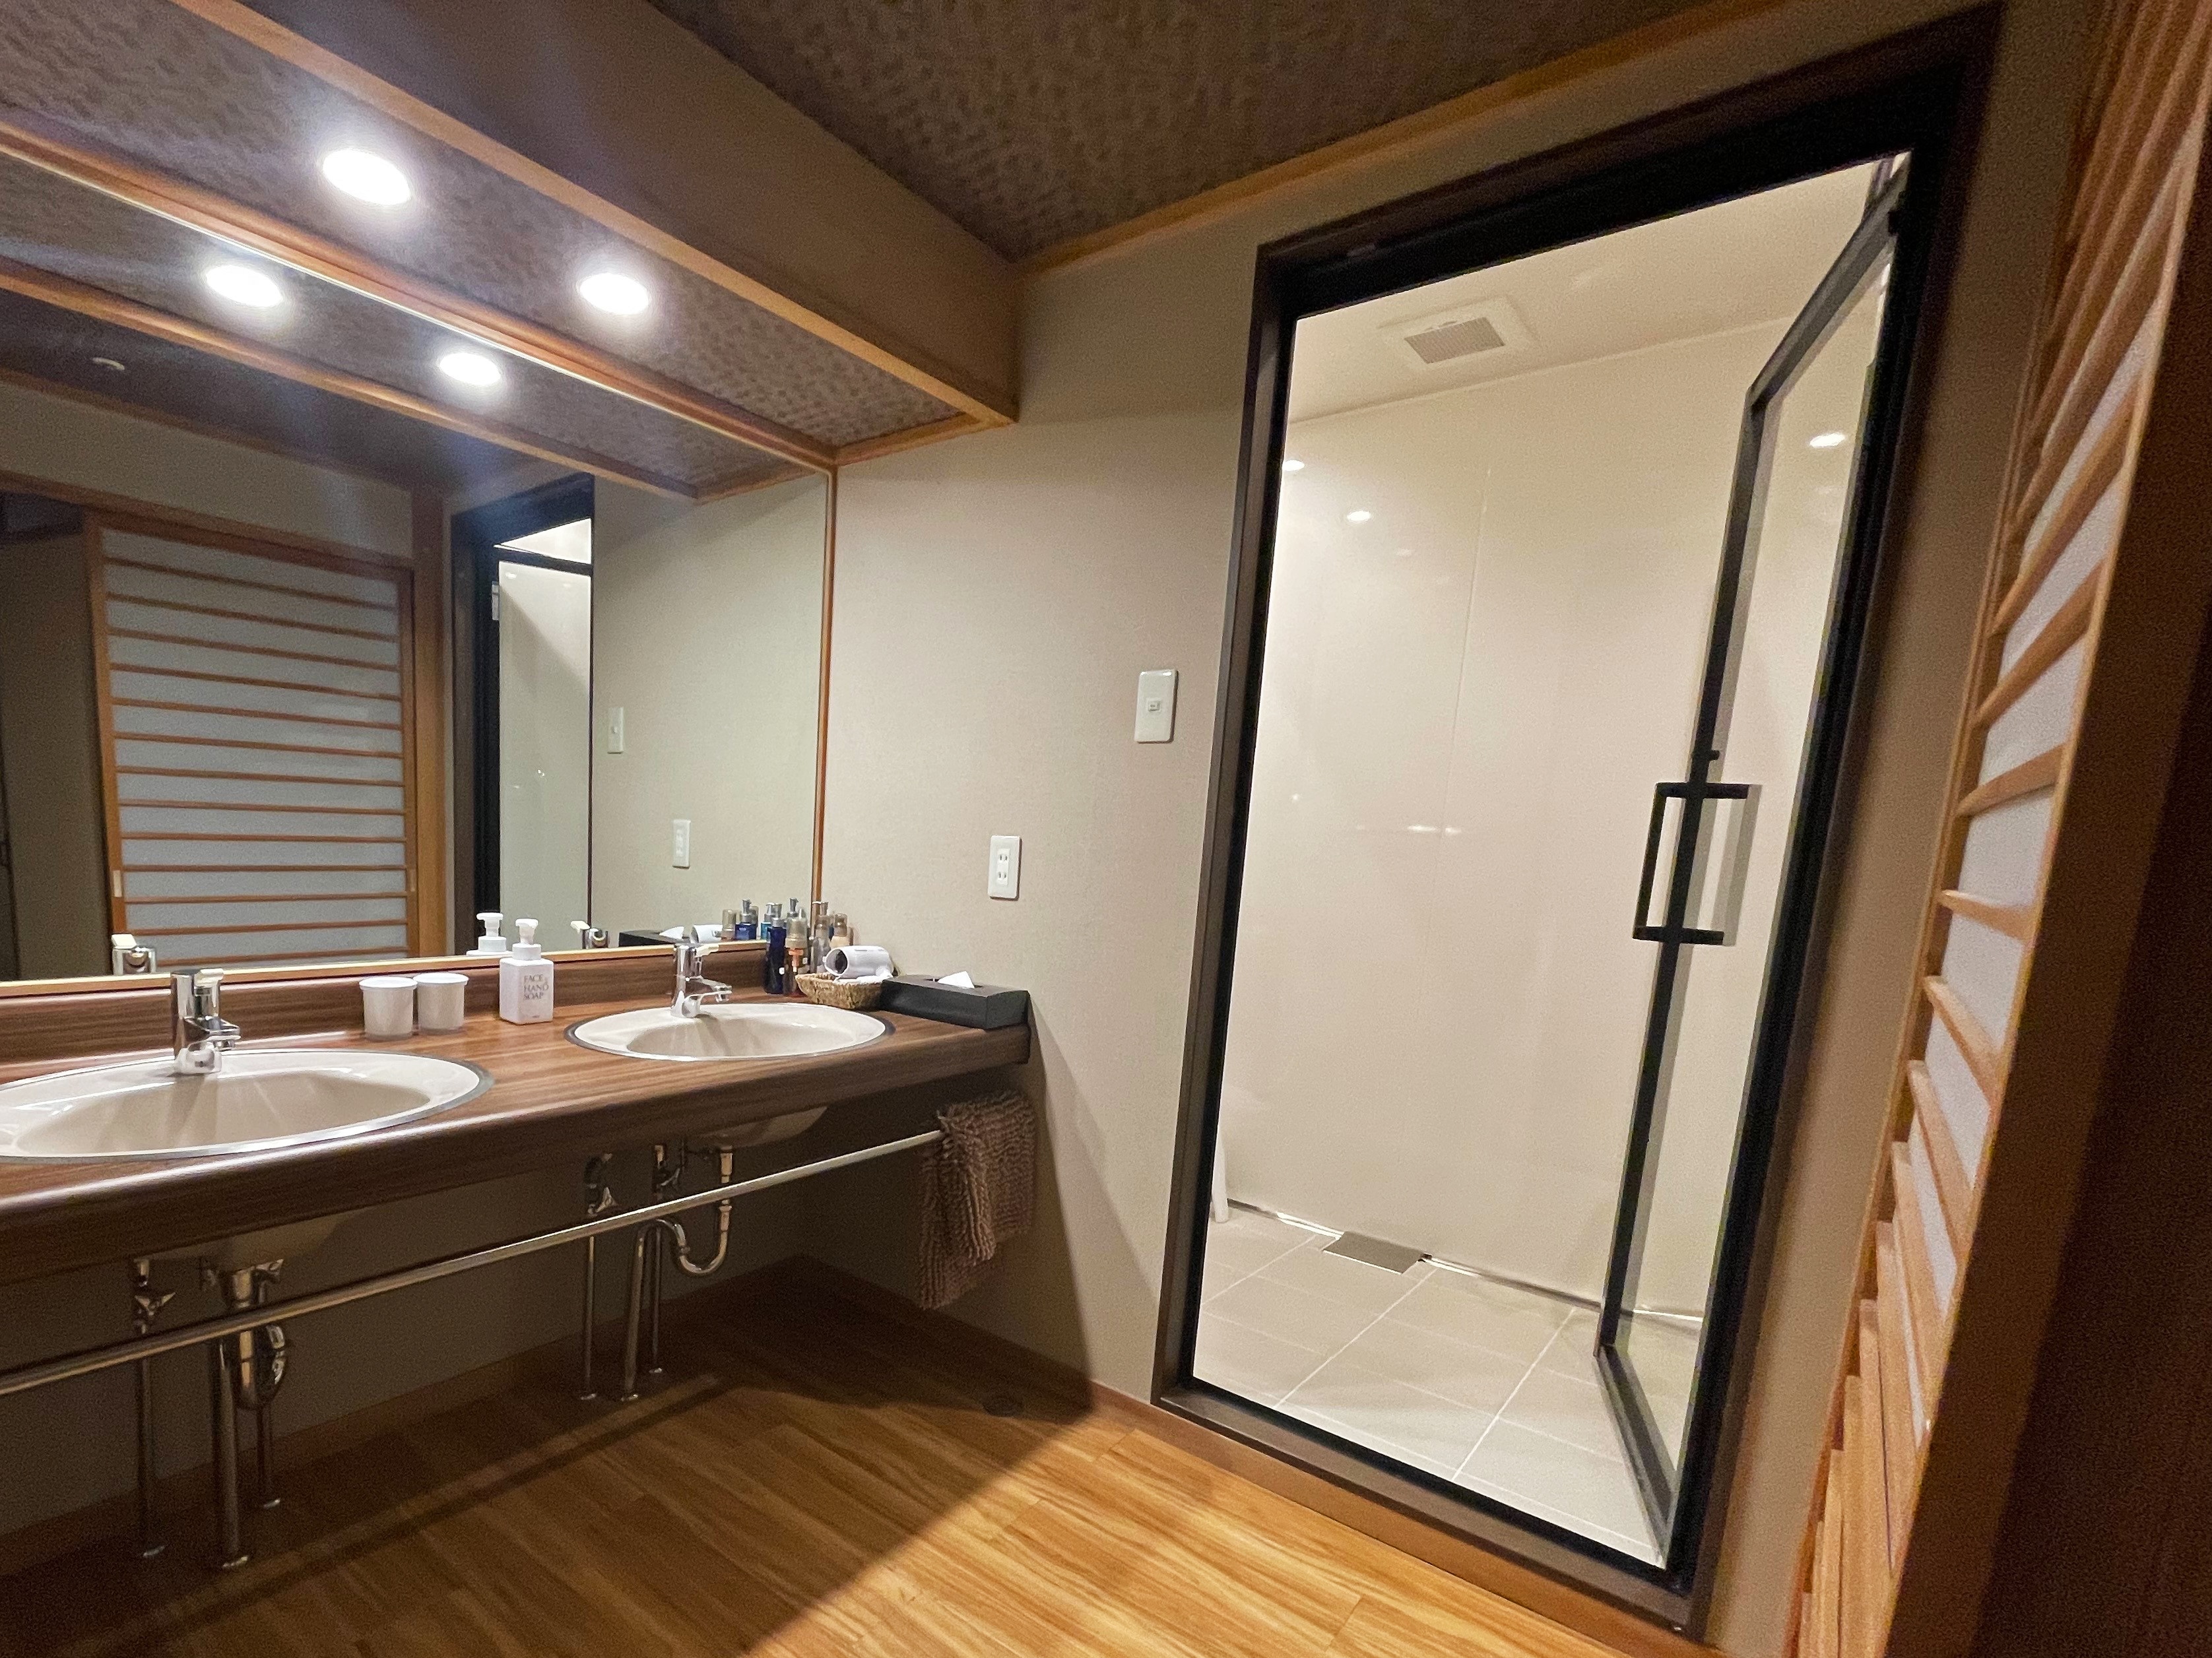 【모던 스위트】 일본식 객실 12.5 다다미 + 트윈 침대 ◆ 샤워 포함